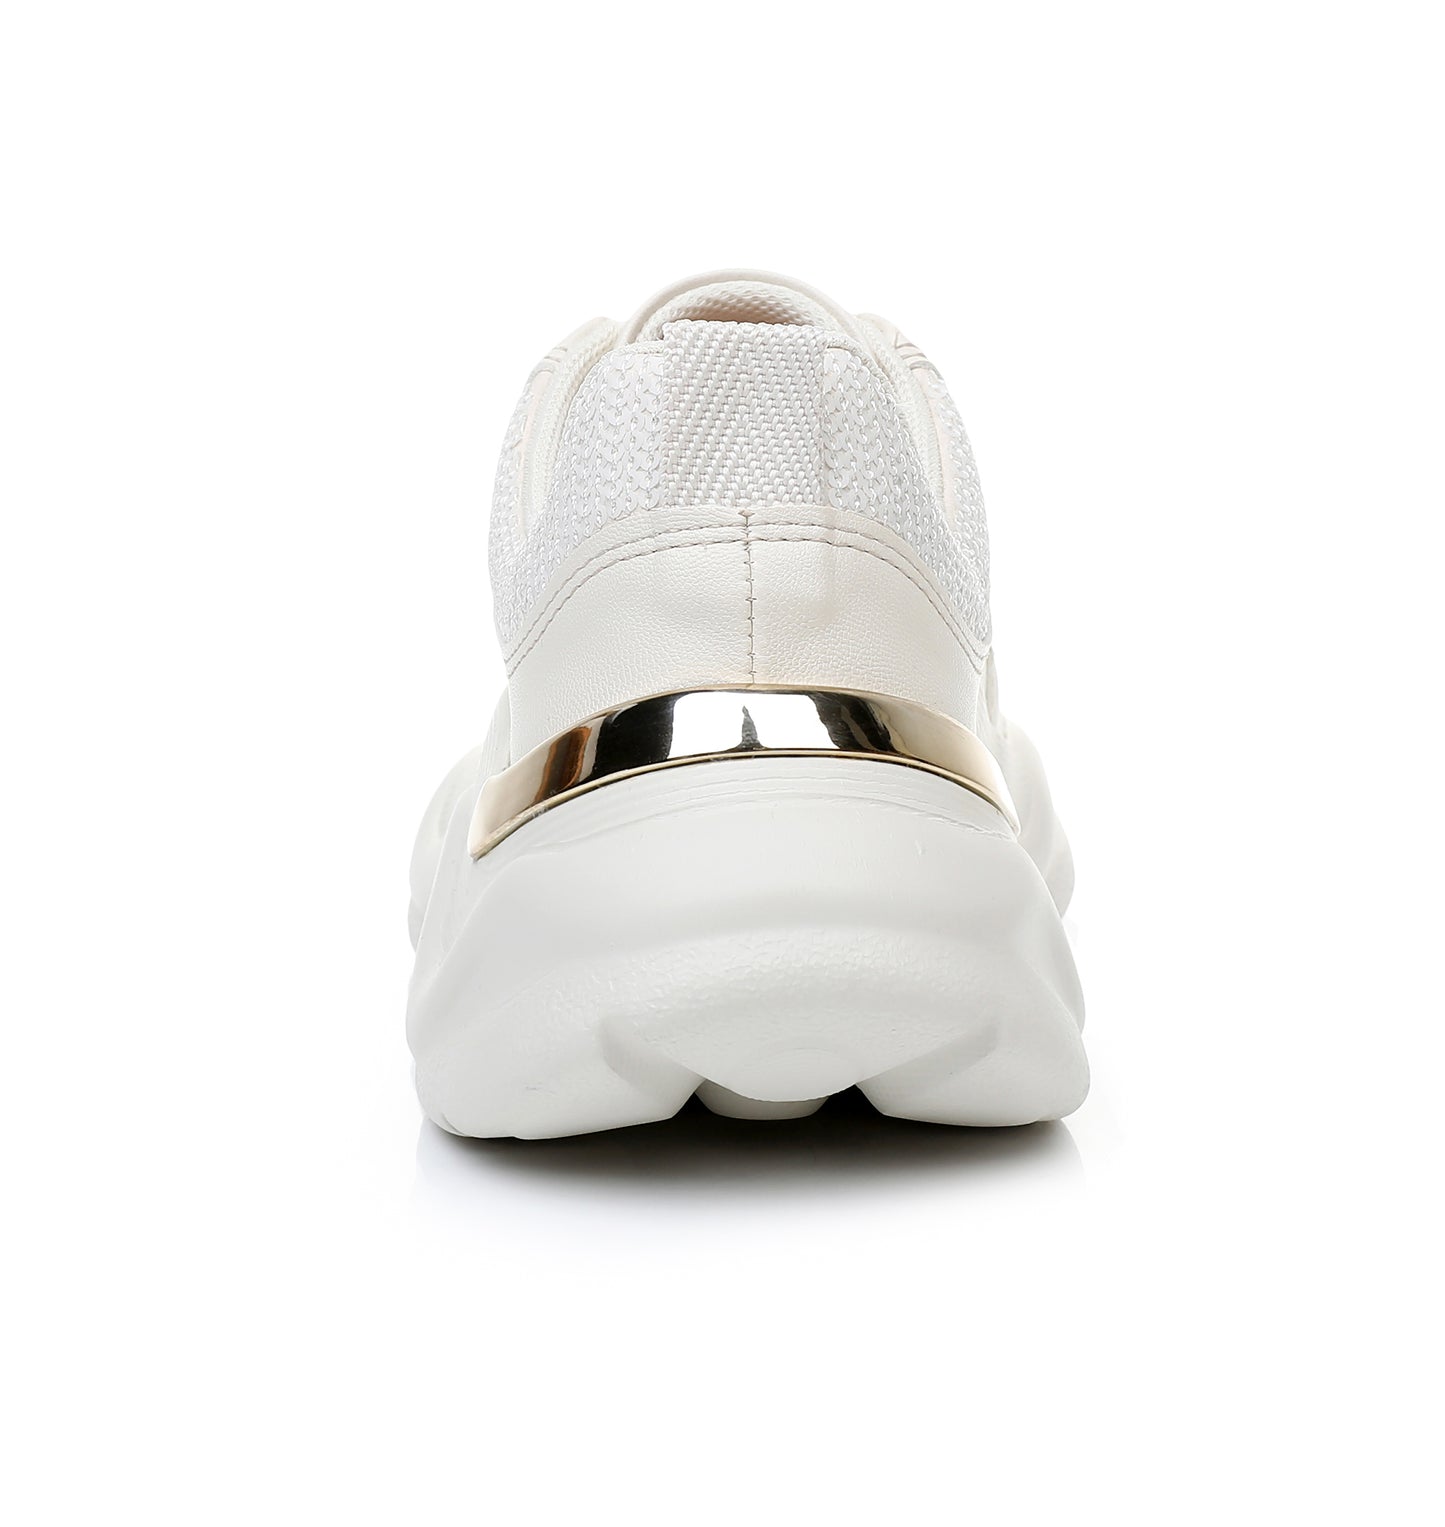 City Beat Chunk Sneakers - White n Natual (939.005)